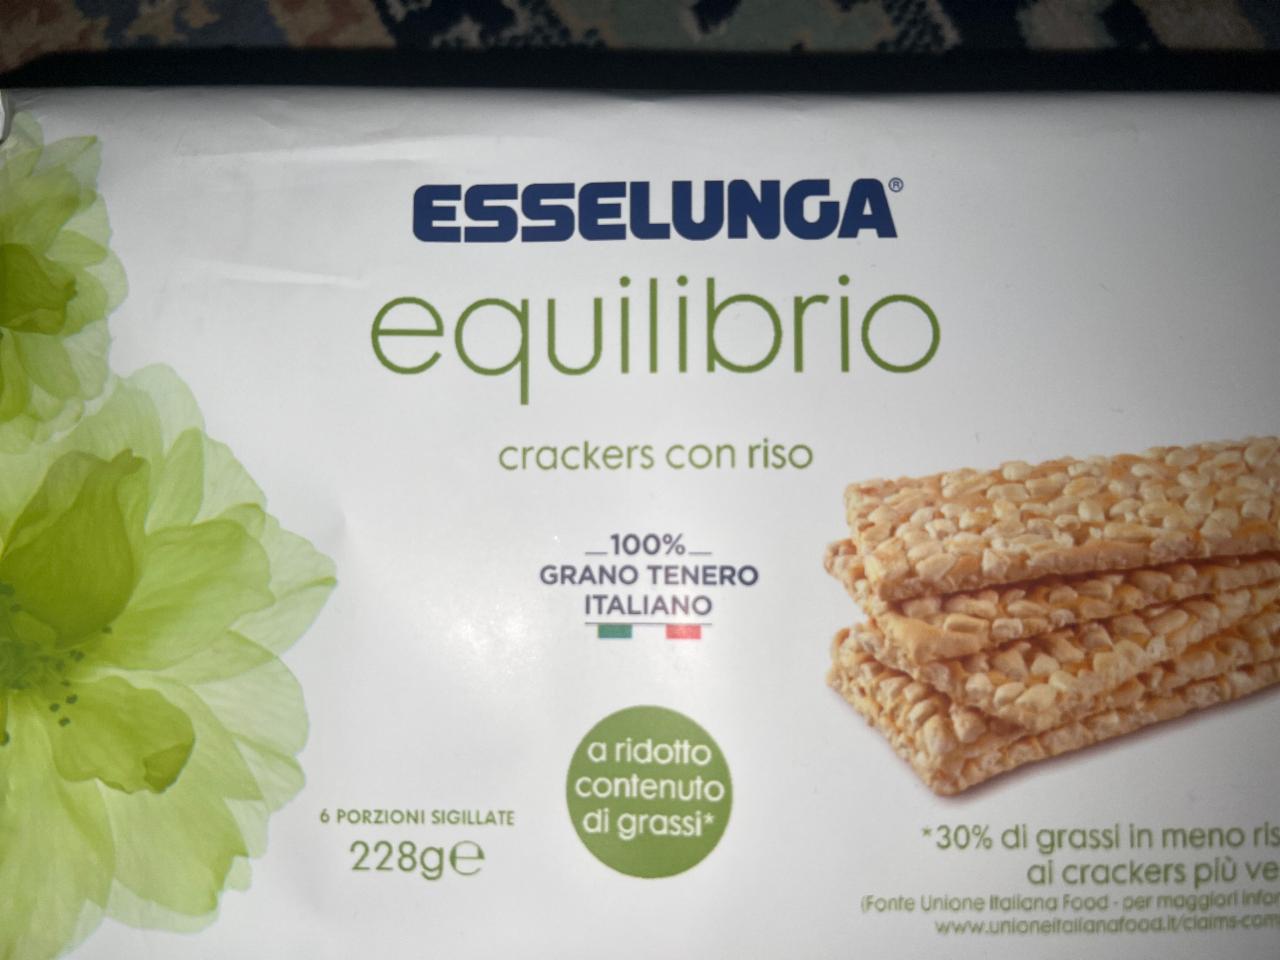 Фото - Equilibrio crackers con riso Esselunga